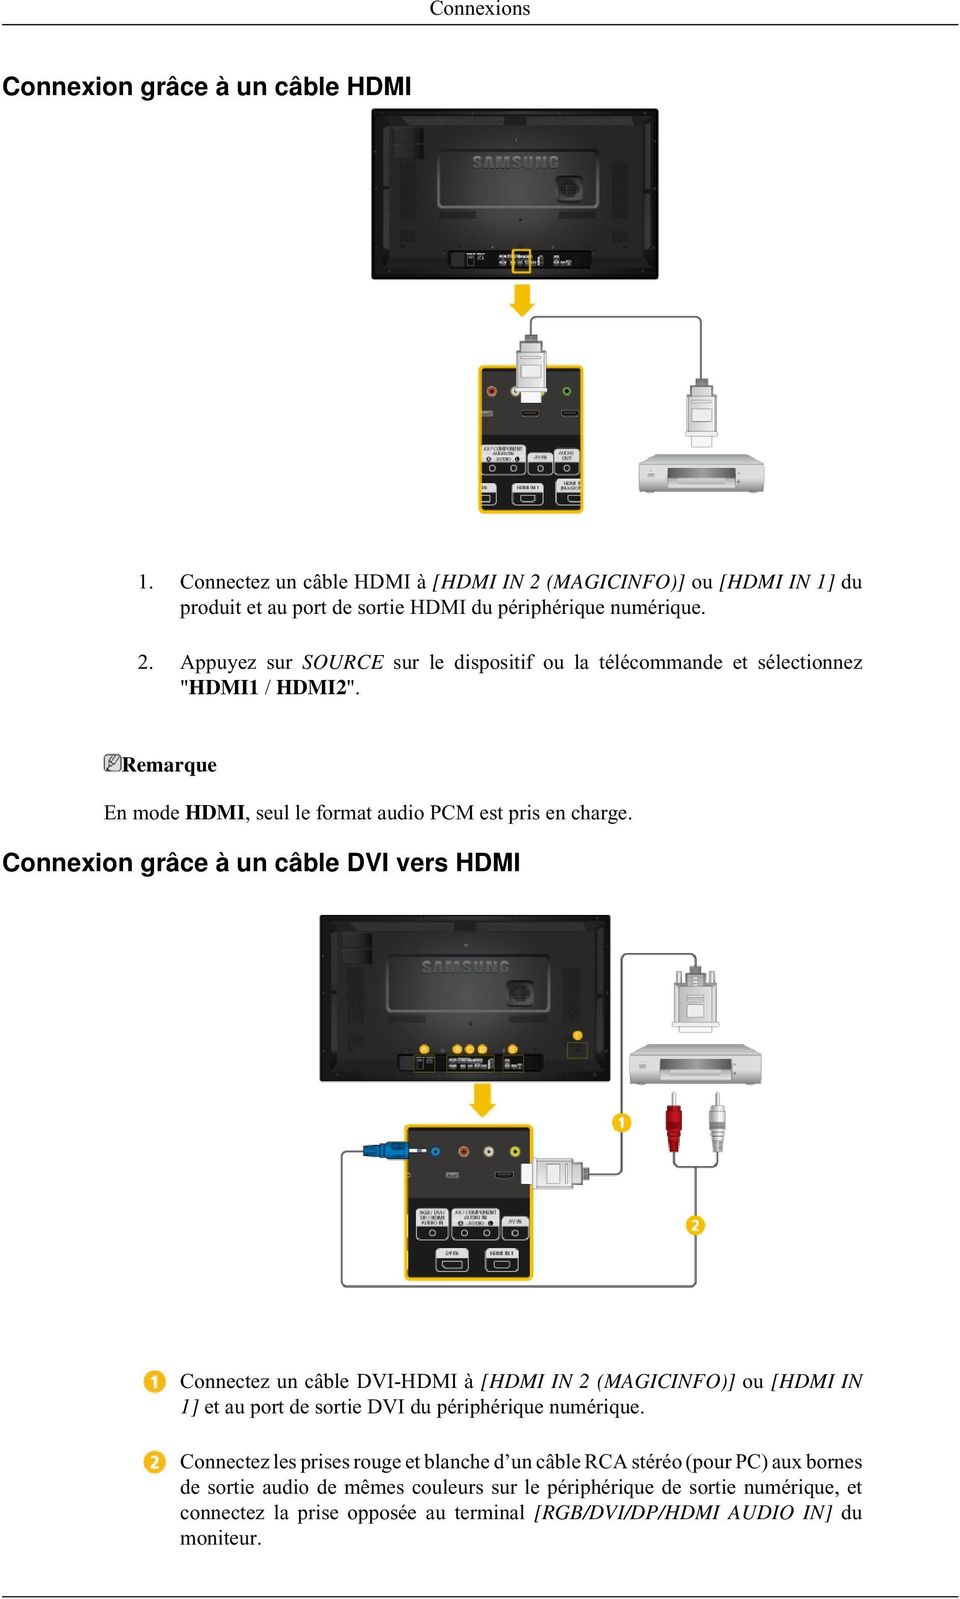 Connexion grâce à un câble DVI vers HDMI Connectez un câble DVI-HDMI à [HDMI IN 2 (MAGICINFO)] ou [HDMI IN 1] et au port de sortie DVI du périphérique numérique.